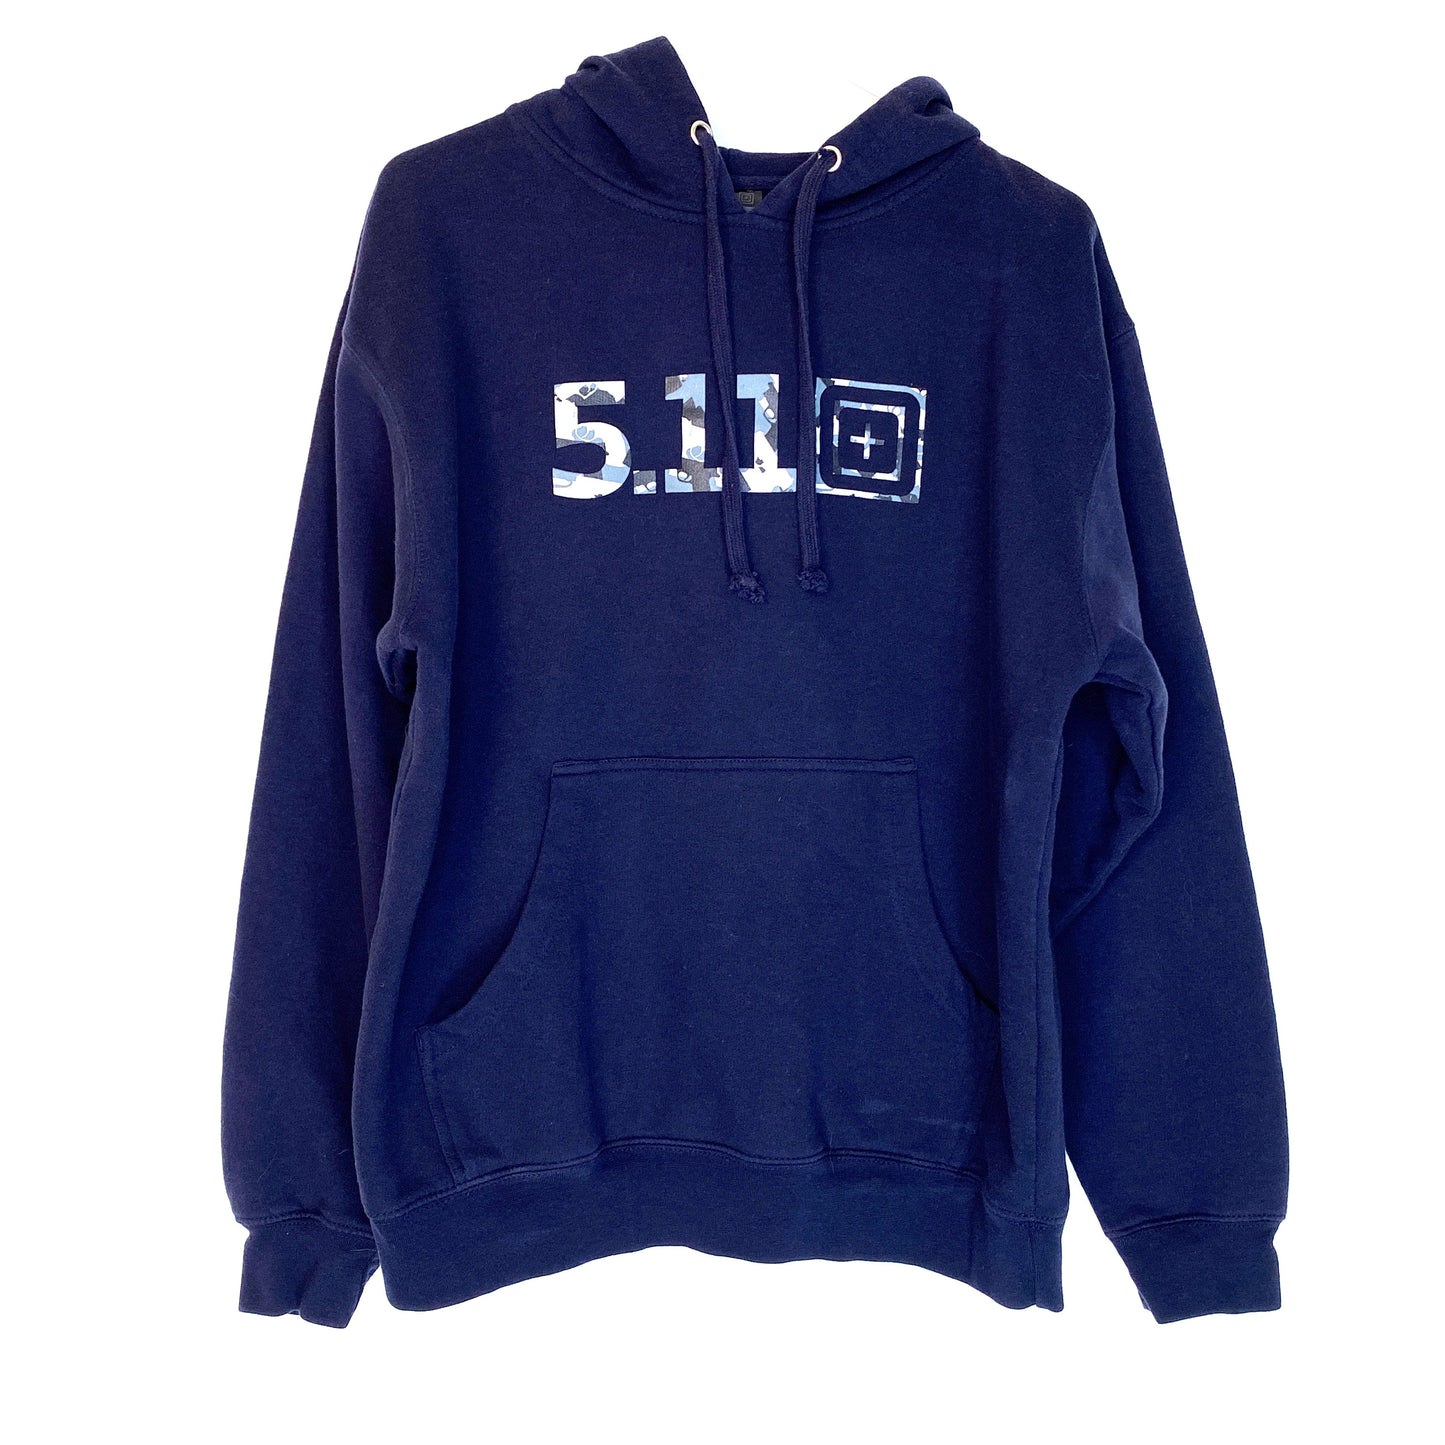 511 Tactical Series Mens Size M Blue Hoodie Sweatshirt